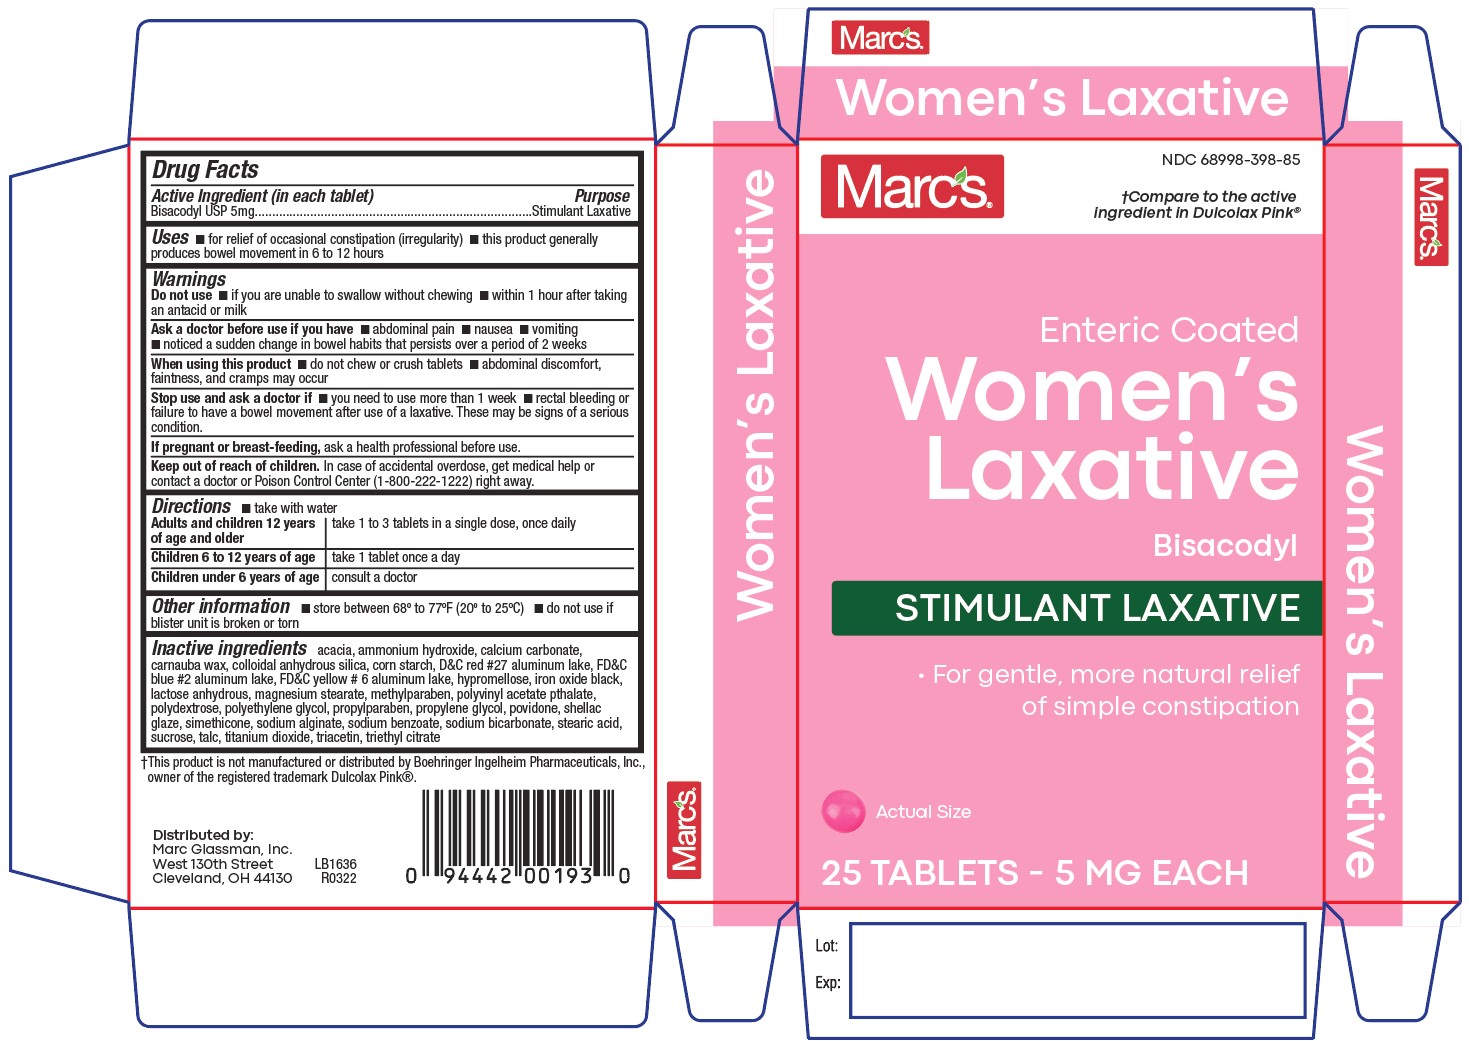 Women's Laxative